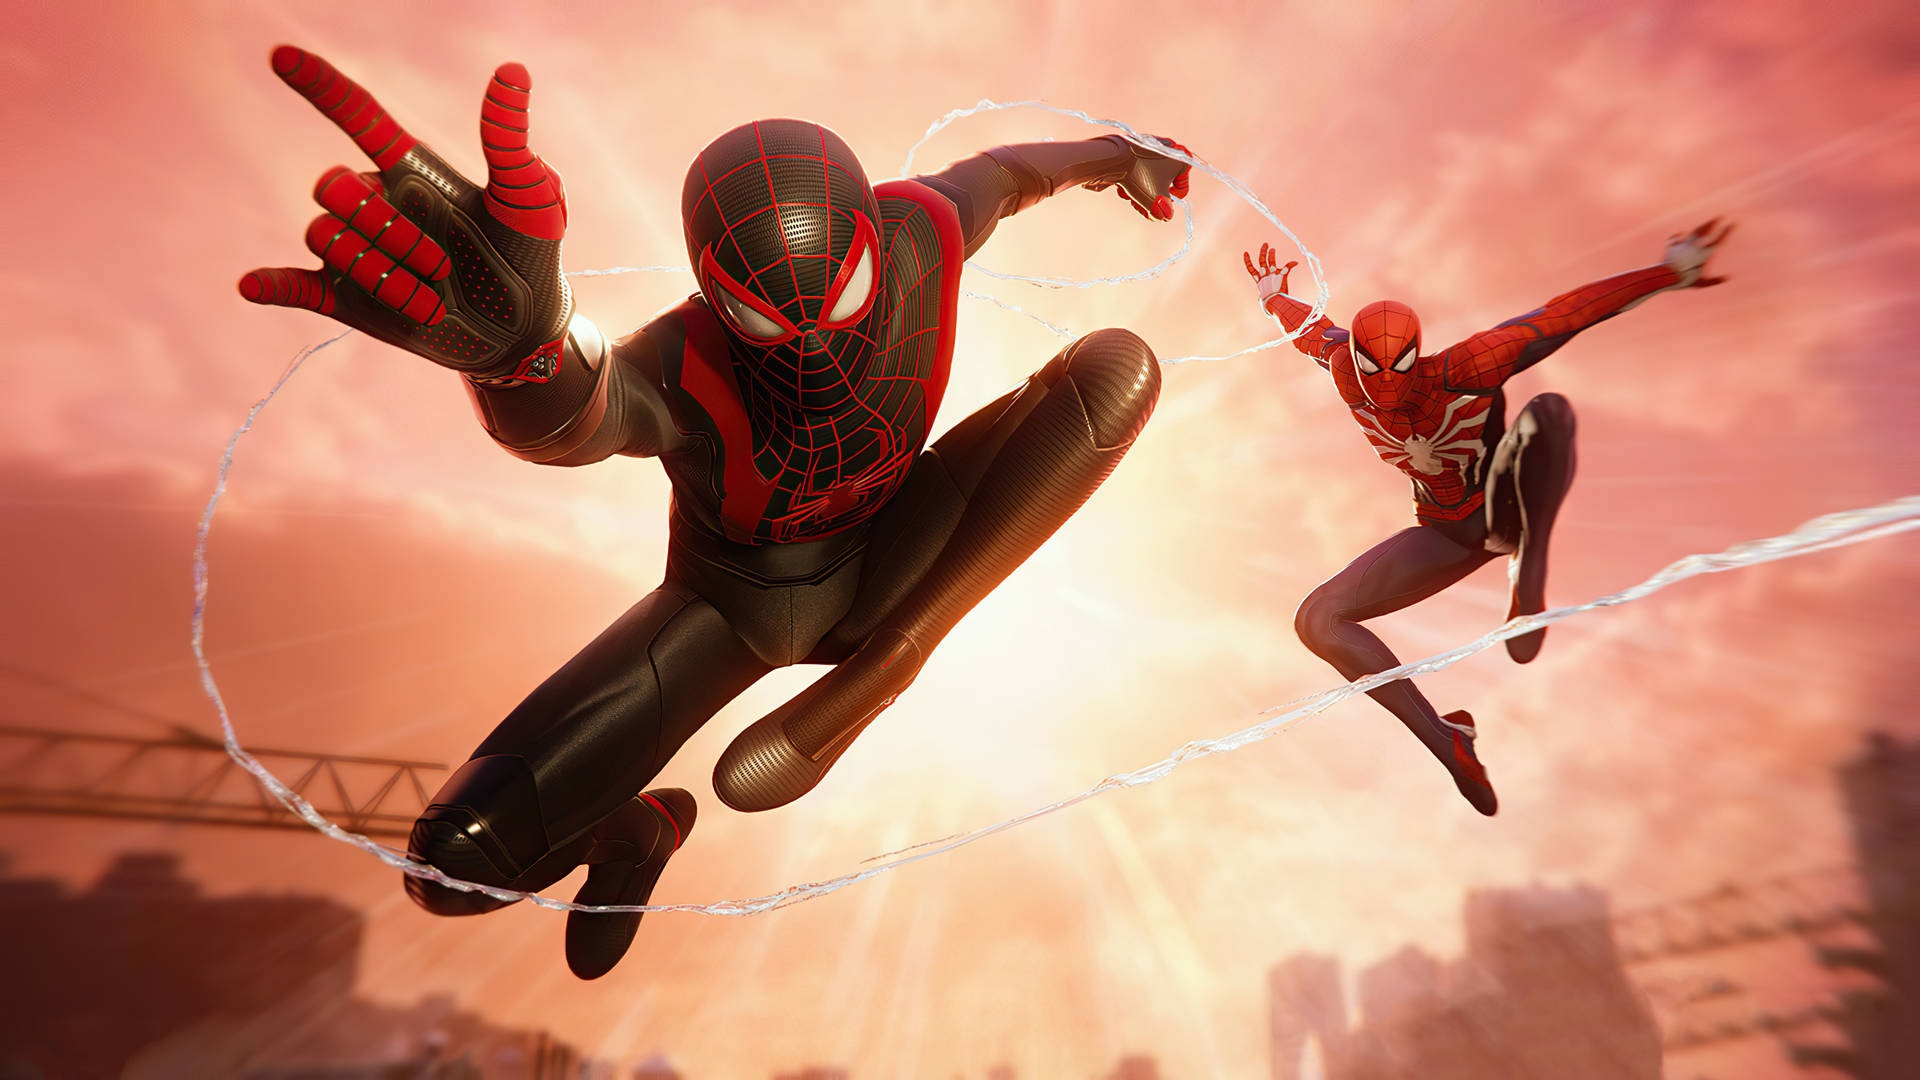 Fræs vækkekræfter udover det utrolige med Spider-Man Miles Morales på PS5. Wallpaper